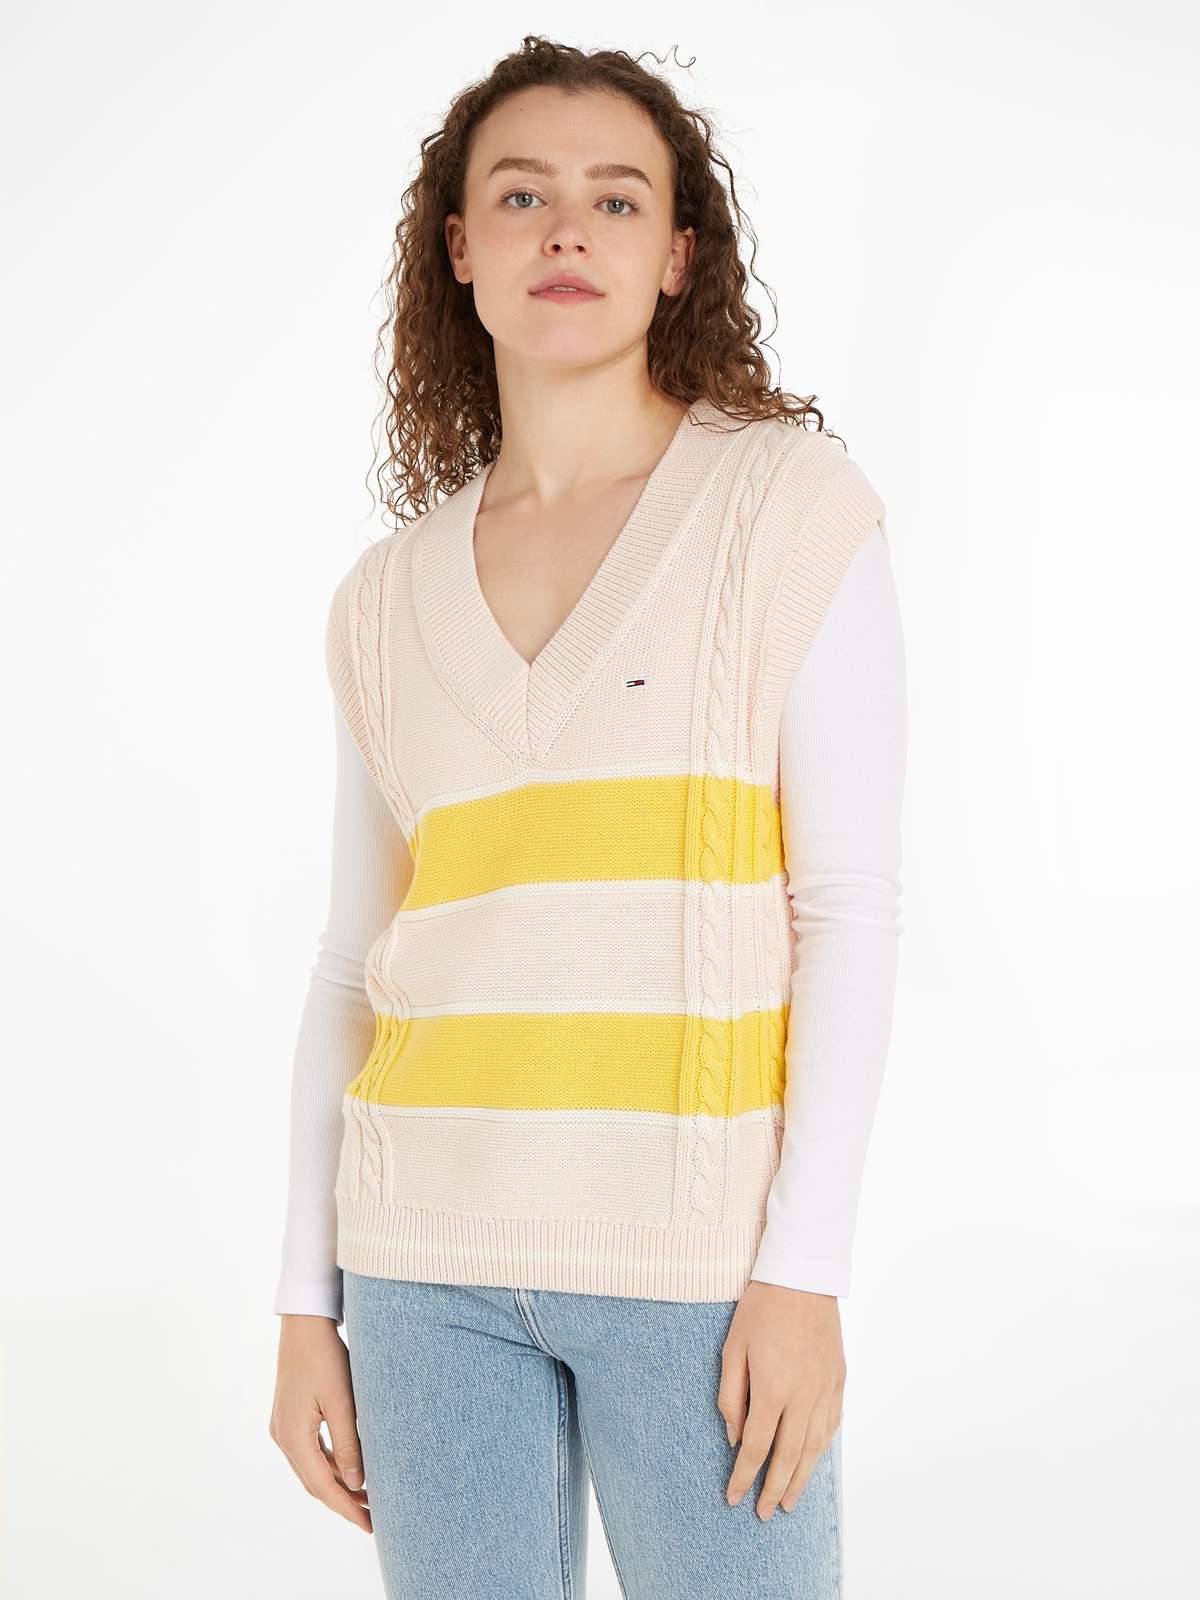 Вязаный свитер с вышивкой логотипа